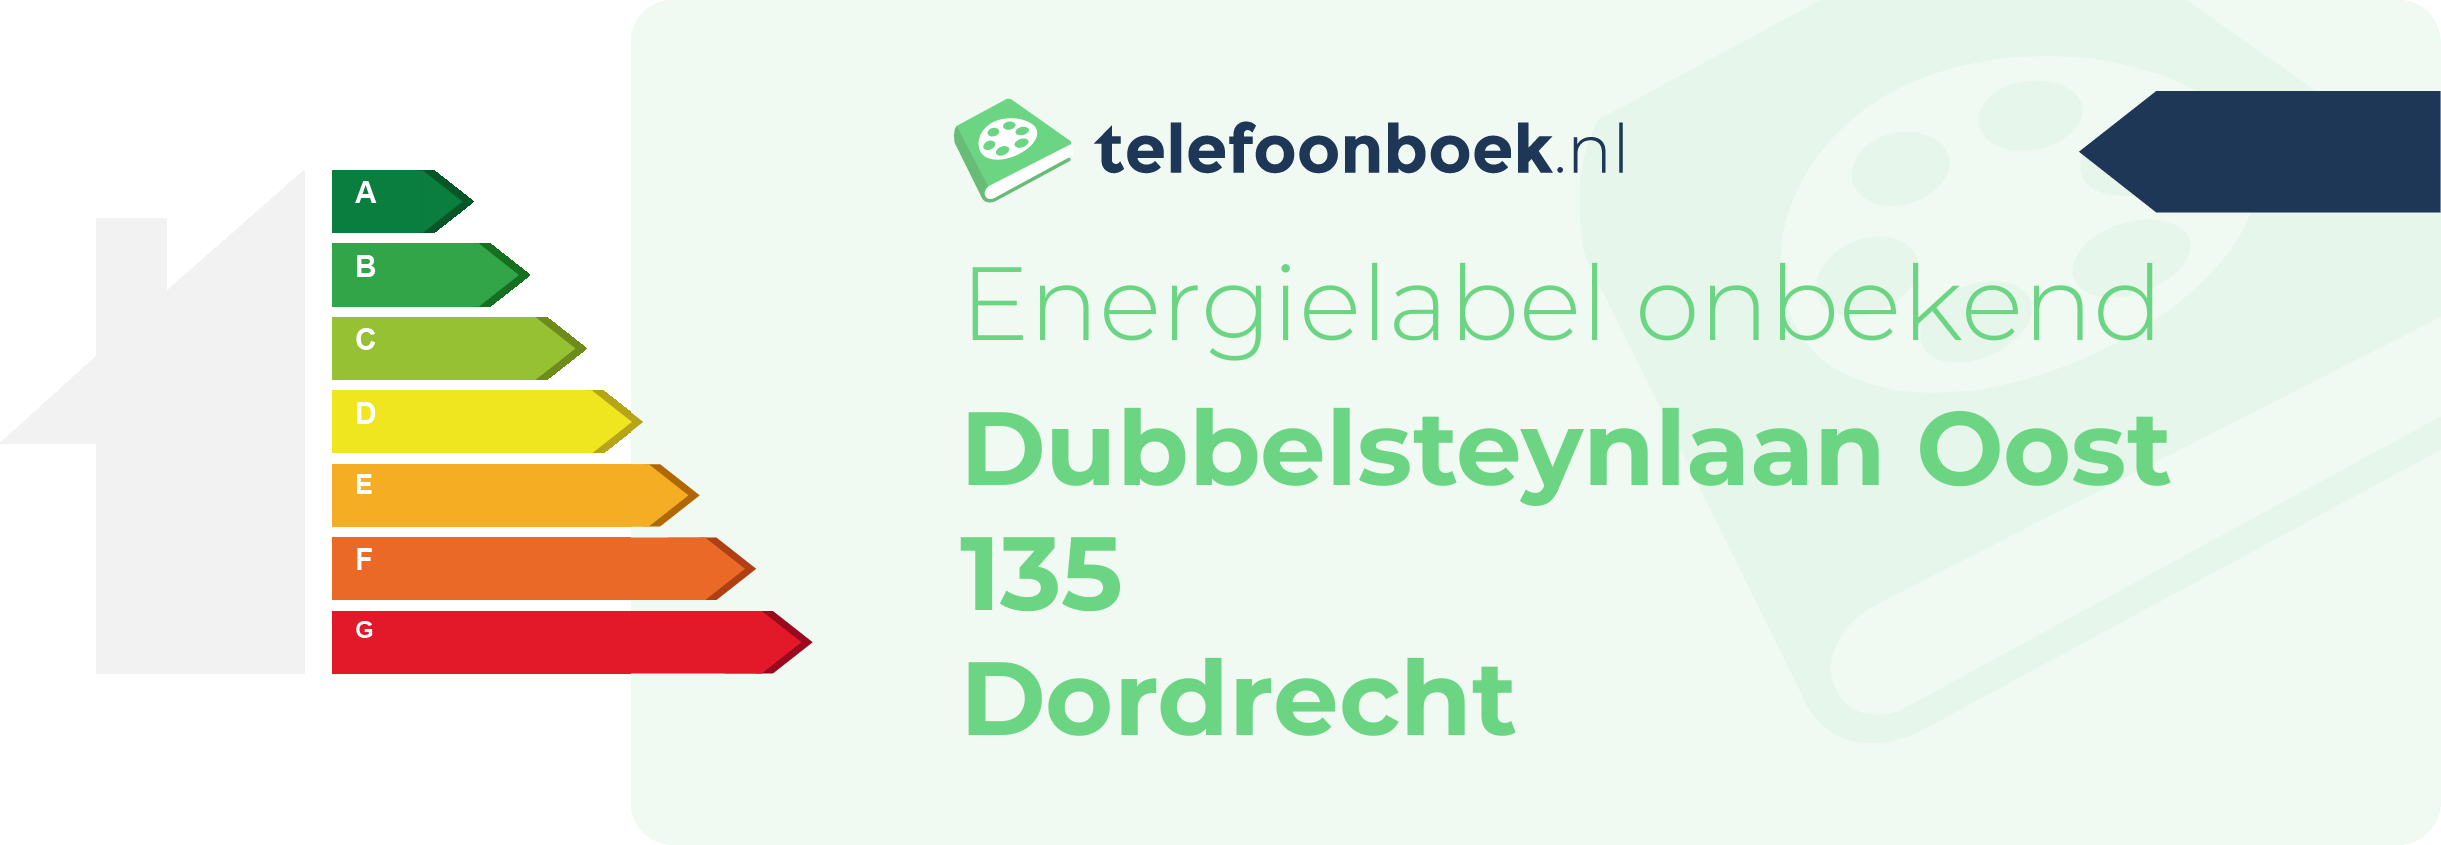 Energielabel Dubbelsteynlaan Oost 135 Dordrecht